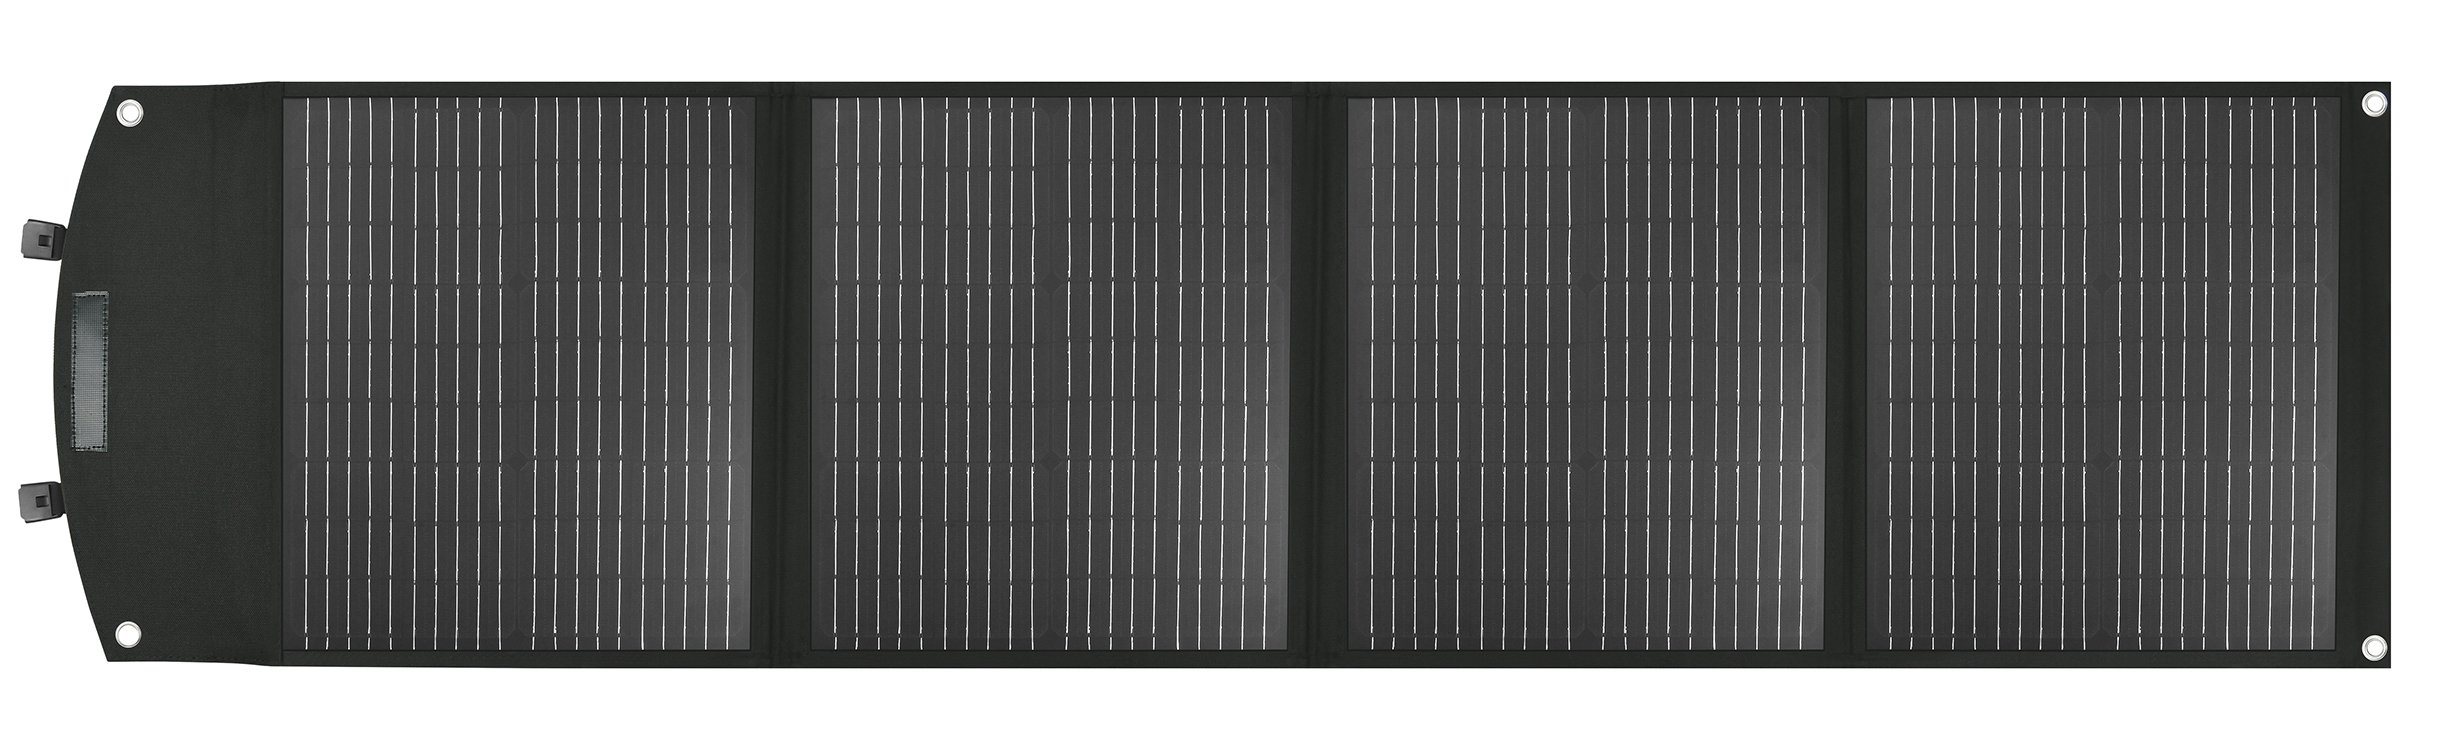 Zusammenklappbares Solarpanel-Ladegerät / monokristallines Solarpanel für Haustiere, 120 W, wasserdichtes Gewebe / intelligenter Ladechip